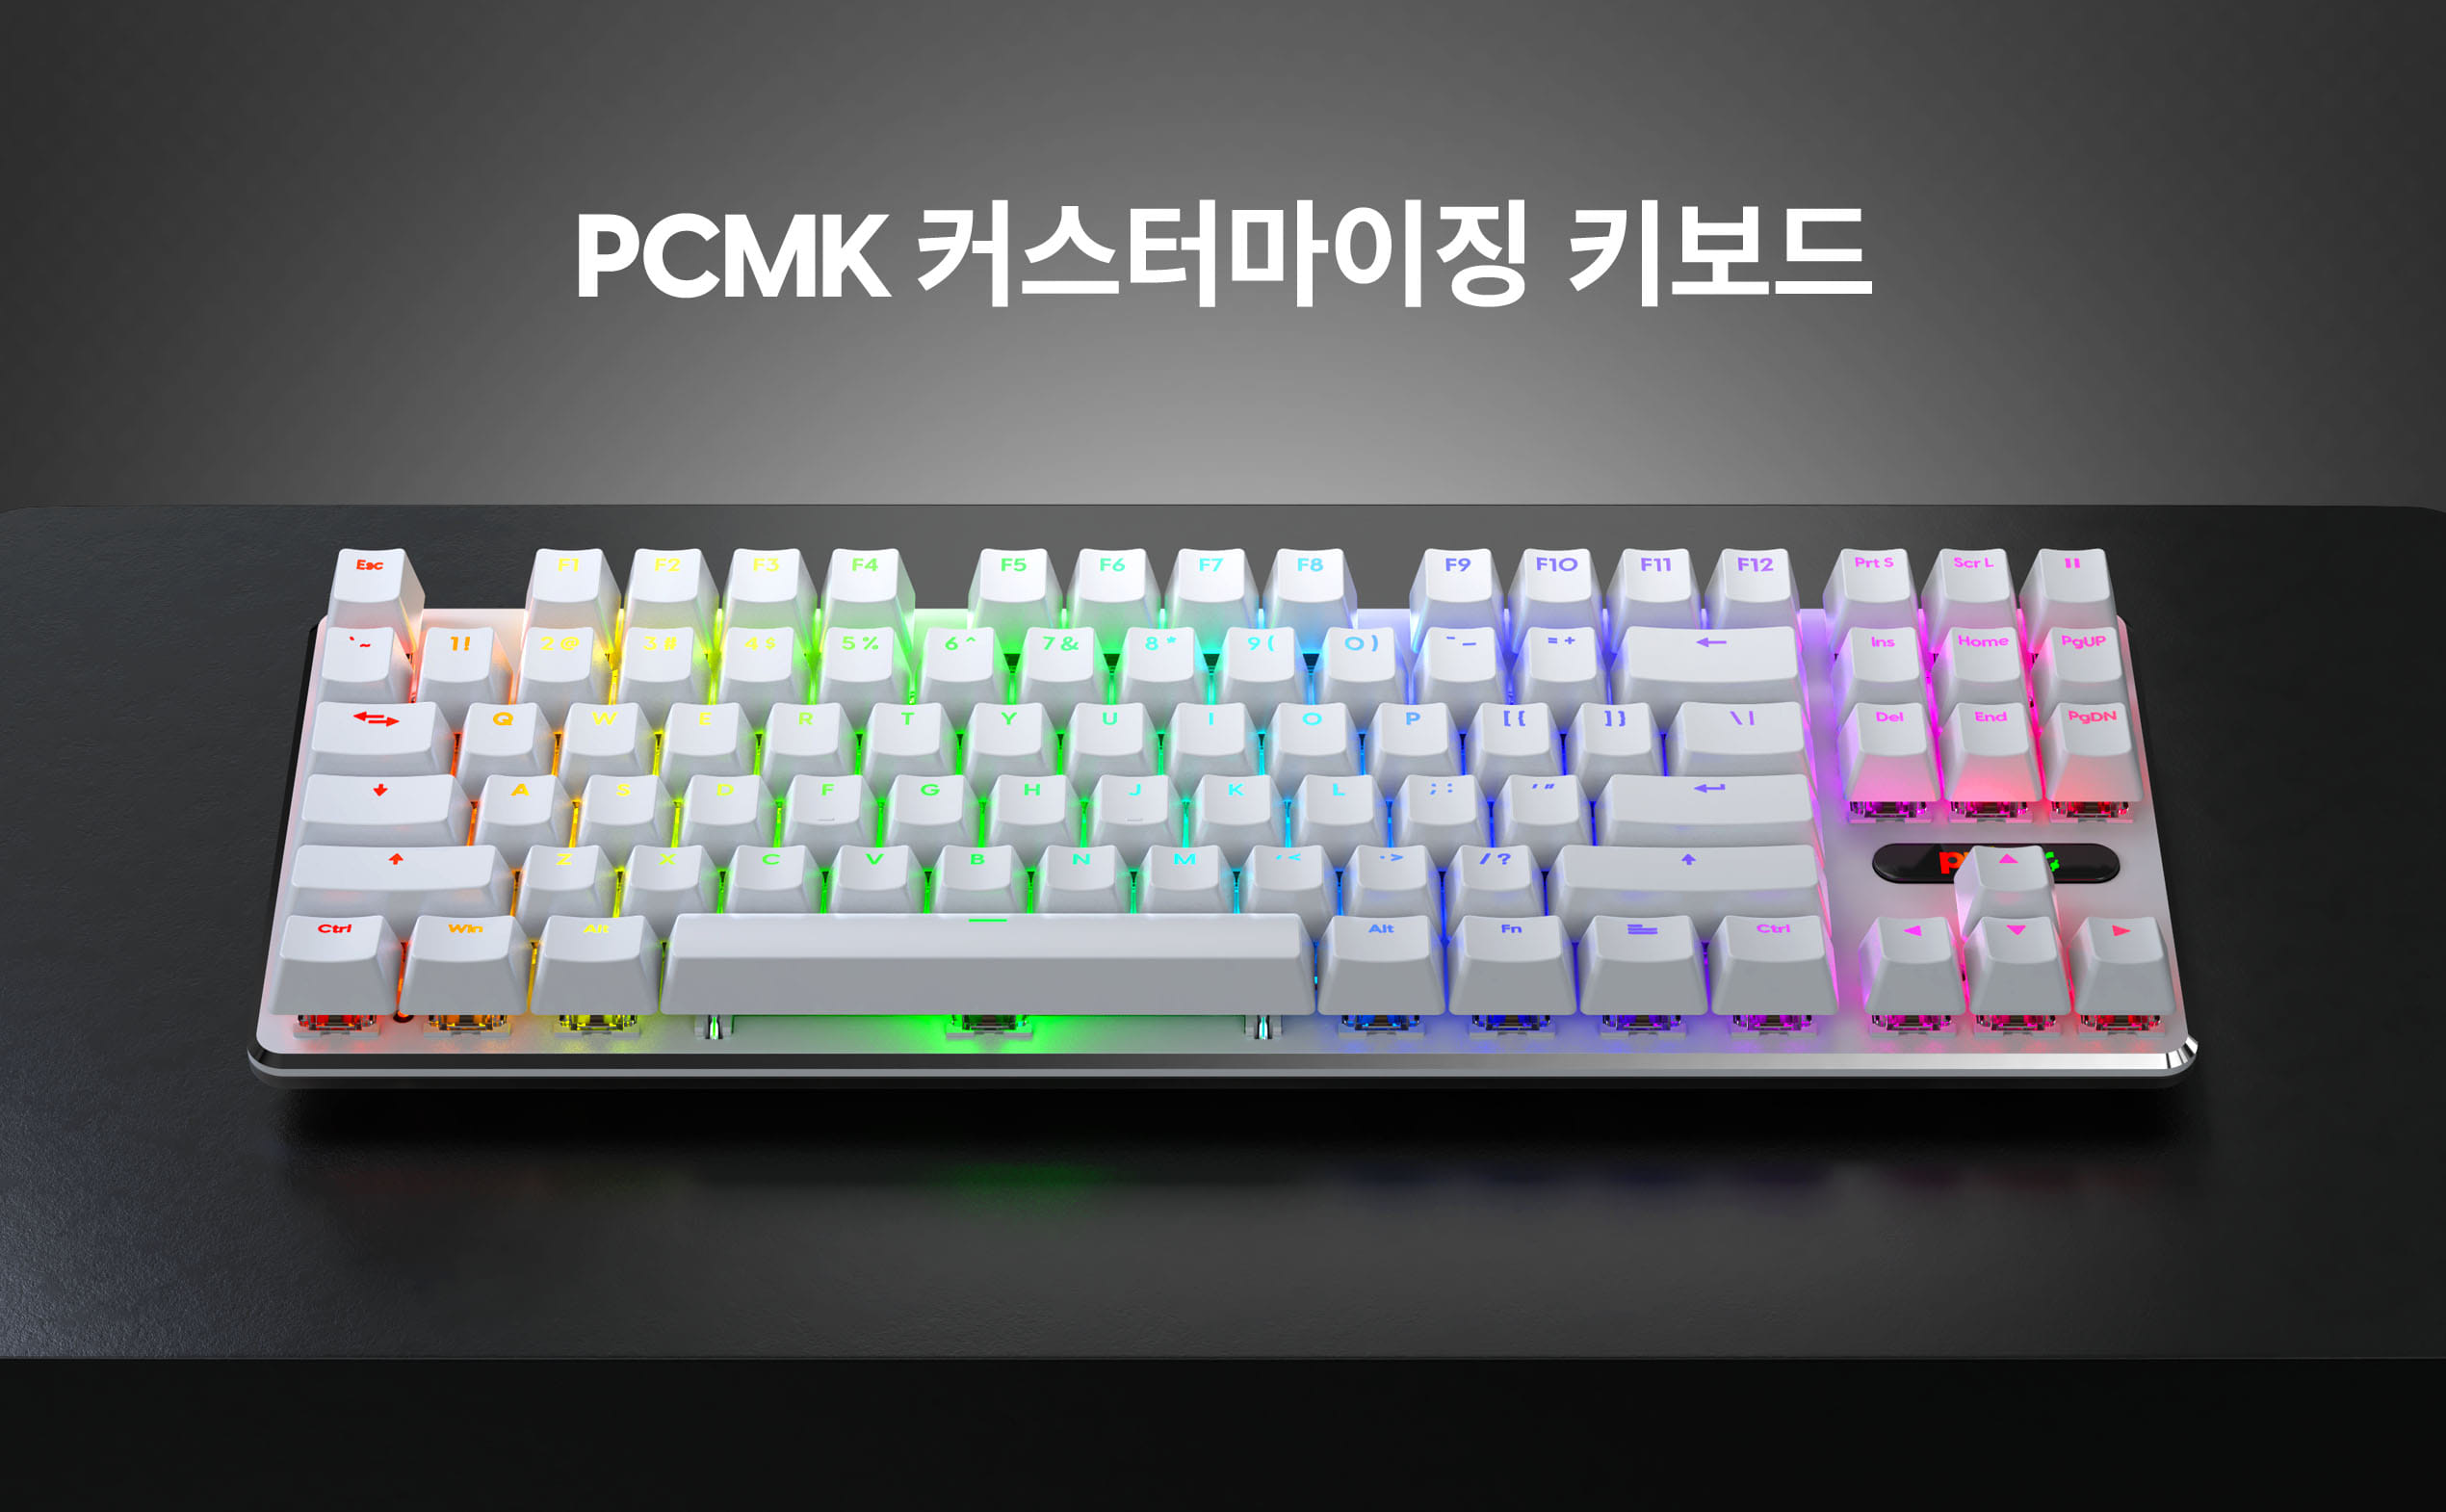 PCMK 키보드